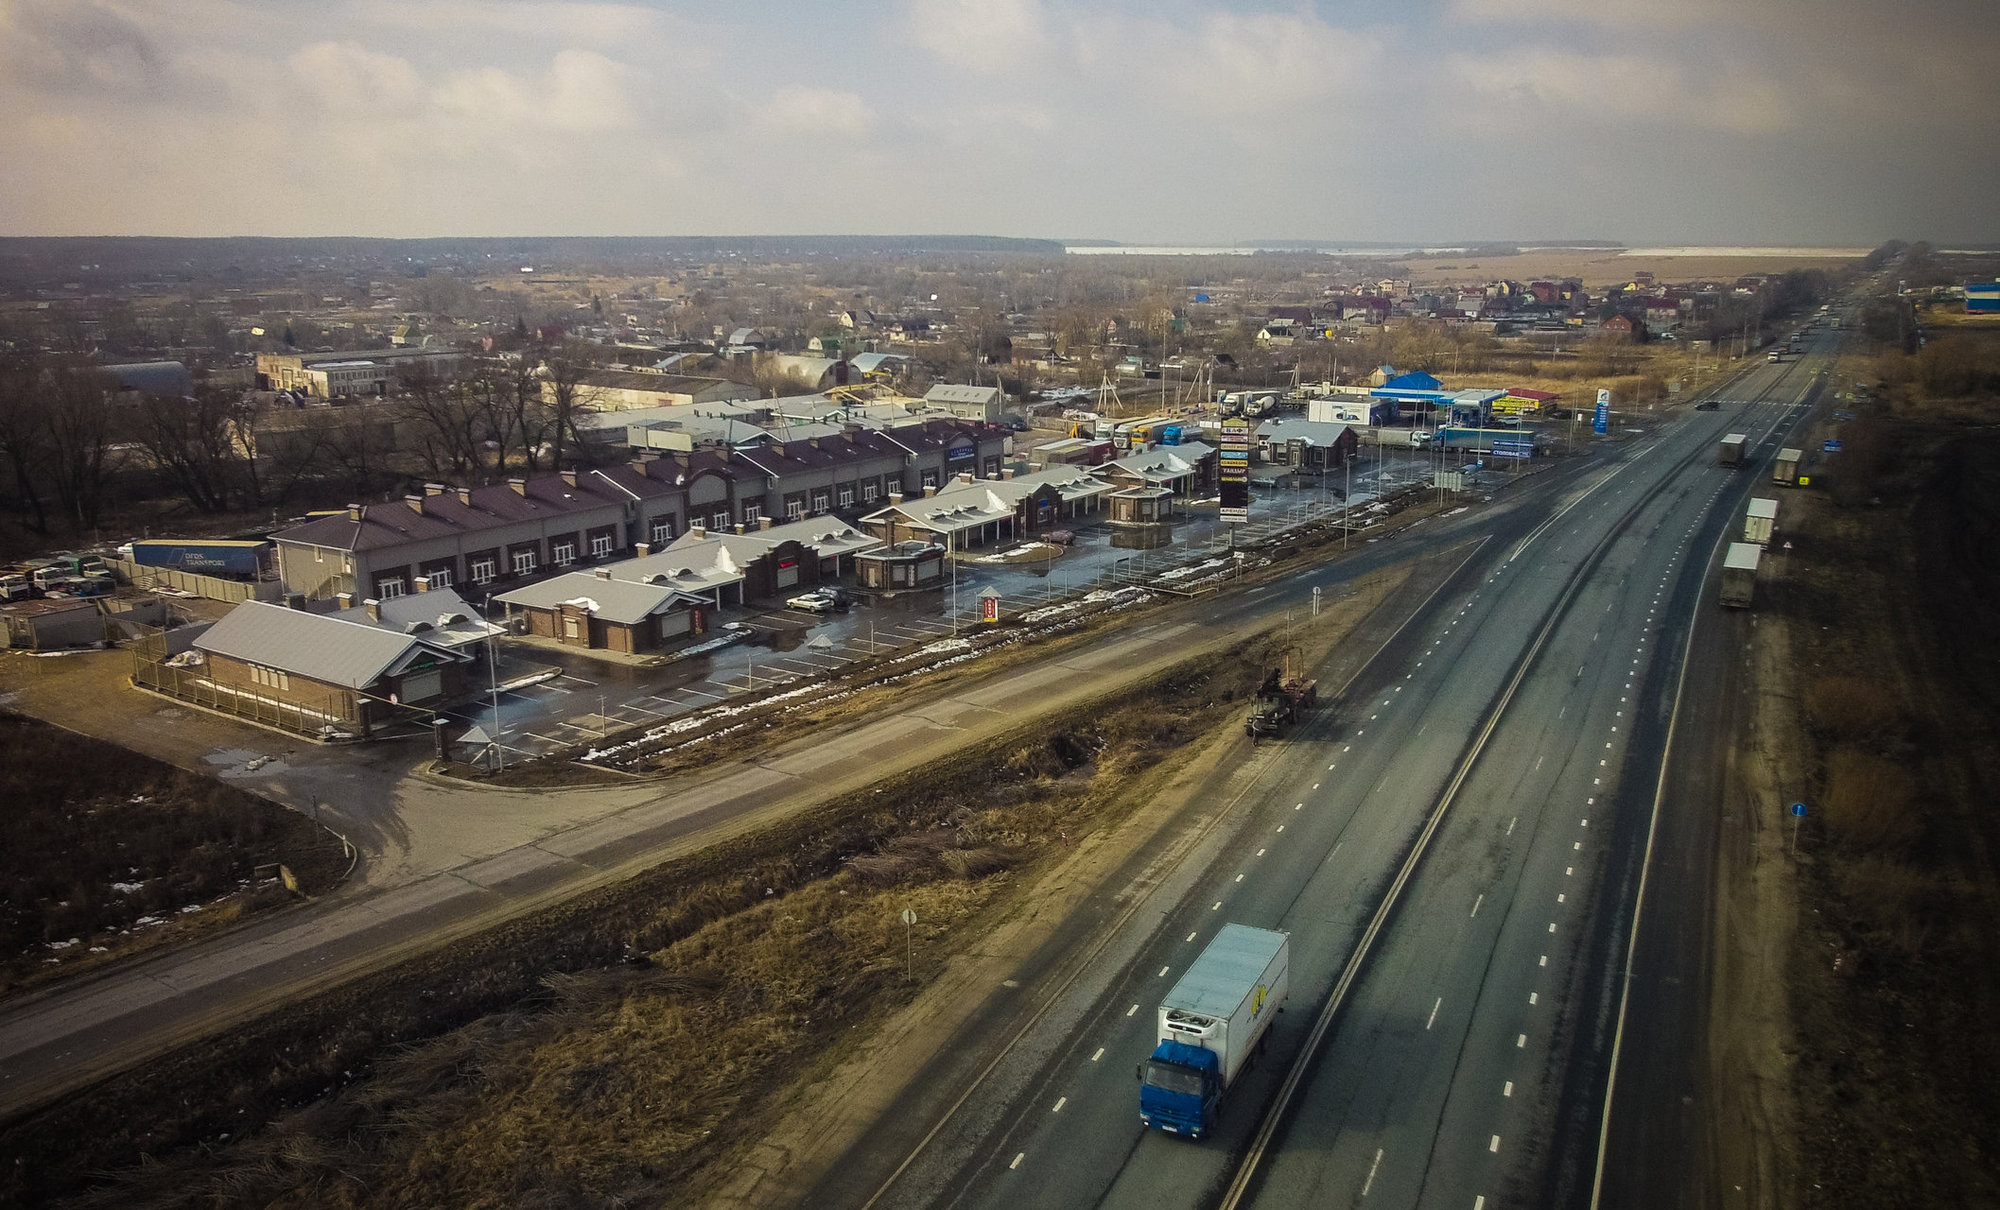 Арендовать склад на Новорязанском шоссе теперь можно по цене от 500 руб. за квадрат